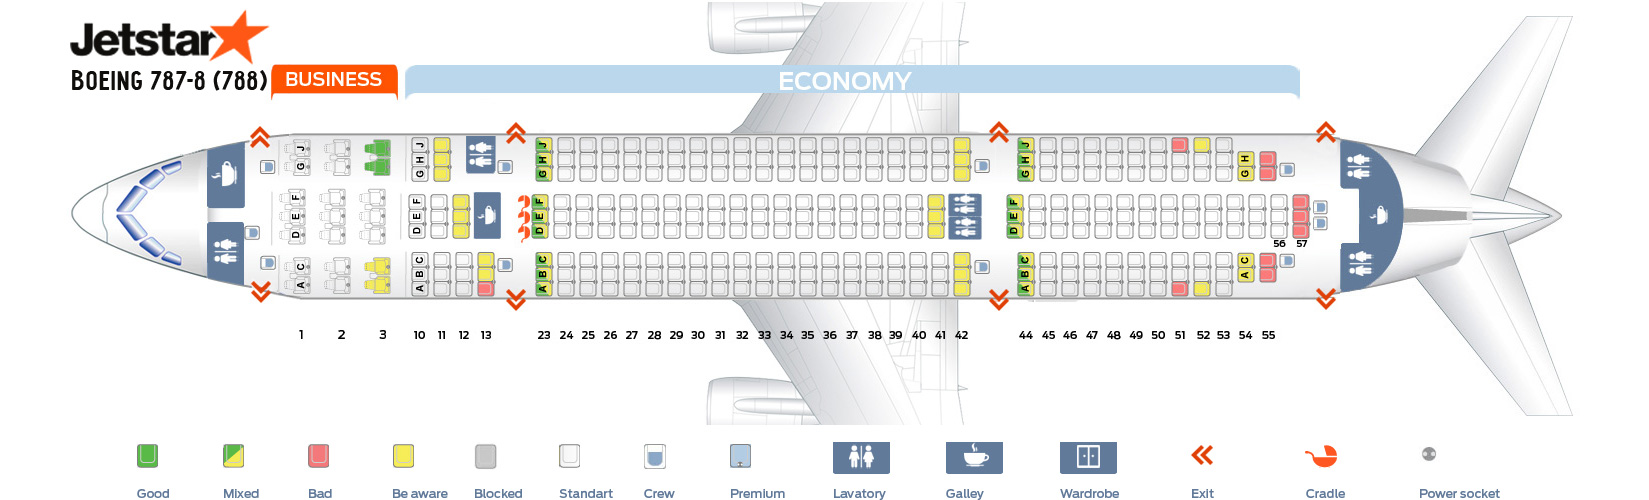 Seat Map Boeing 787 8 Dreamliner Jetstar Best Seats In The Plane